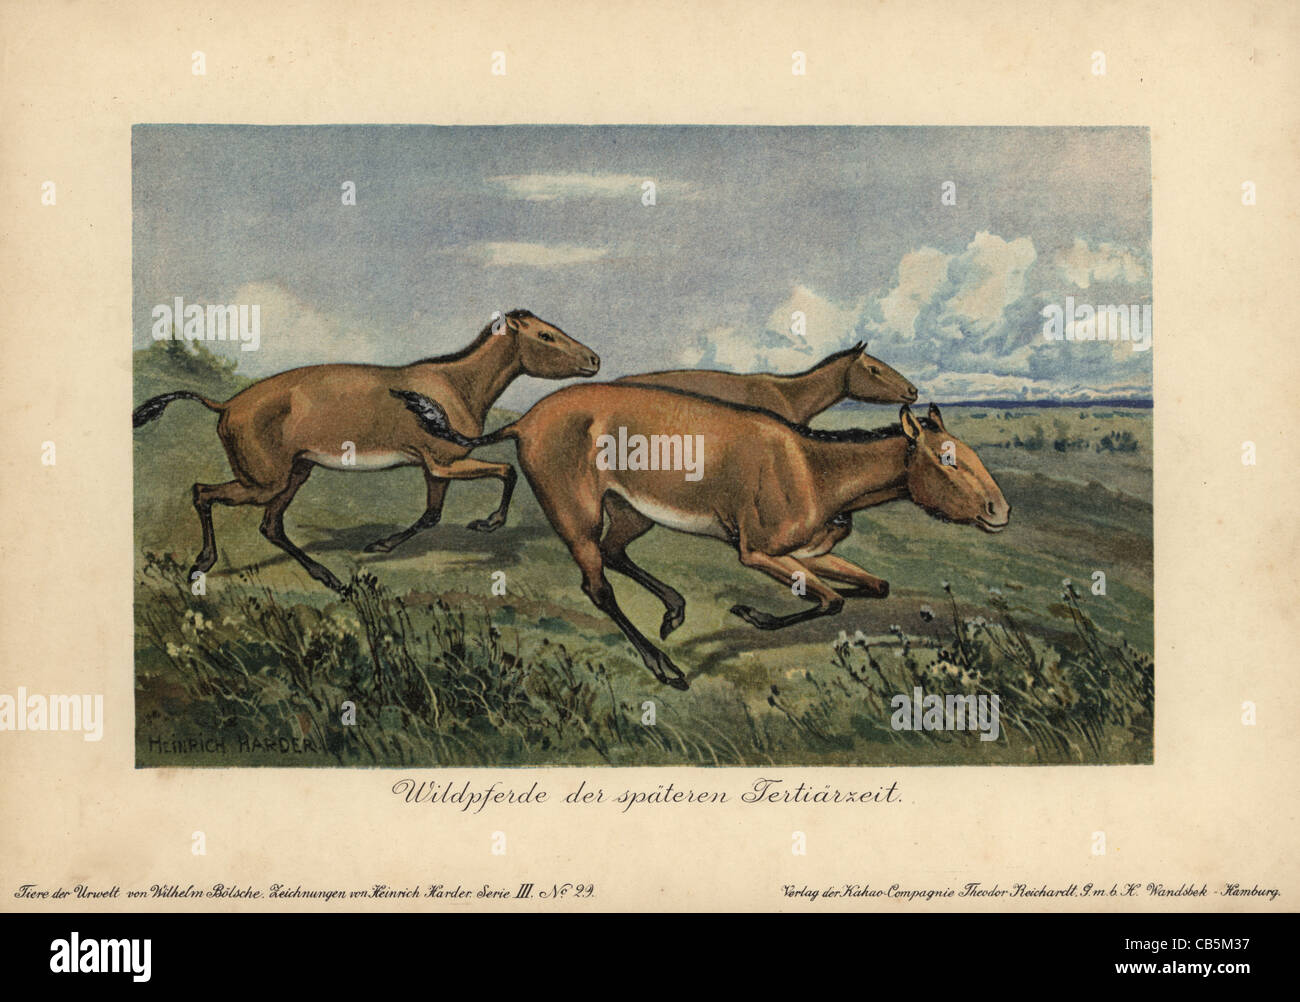 Wild horses of the later Tertiary era, extinct genus of Equus ferus. Stock Photo